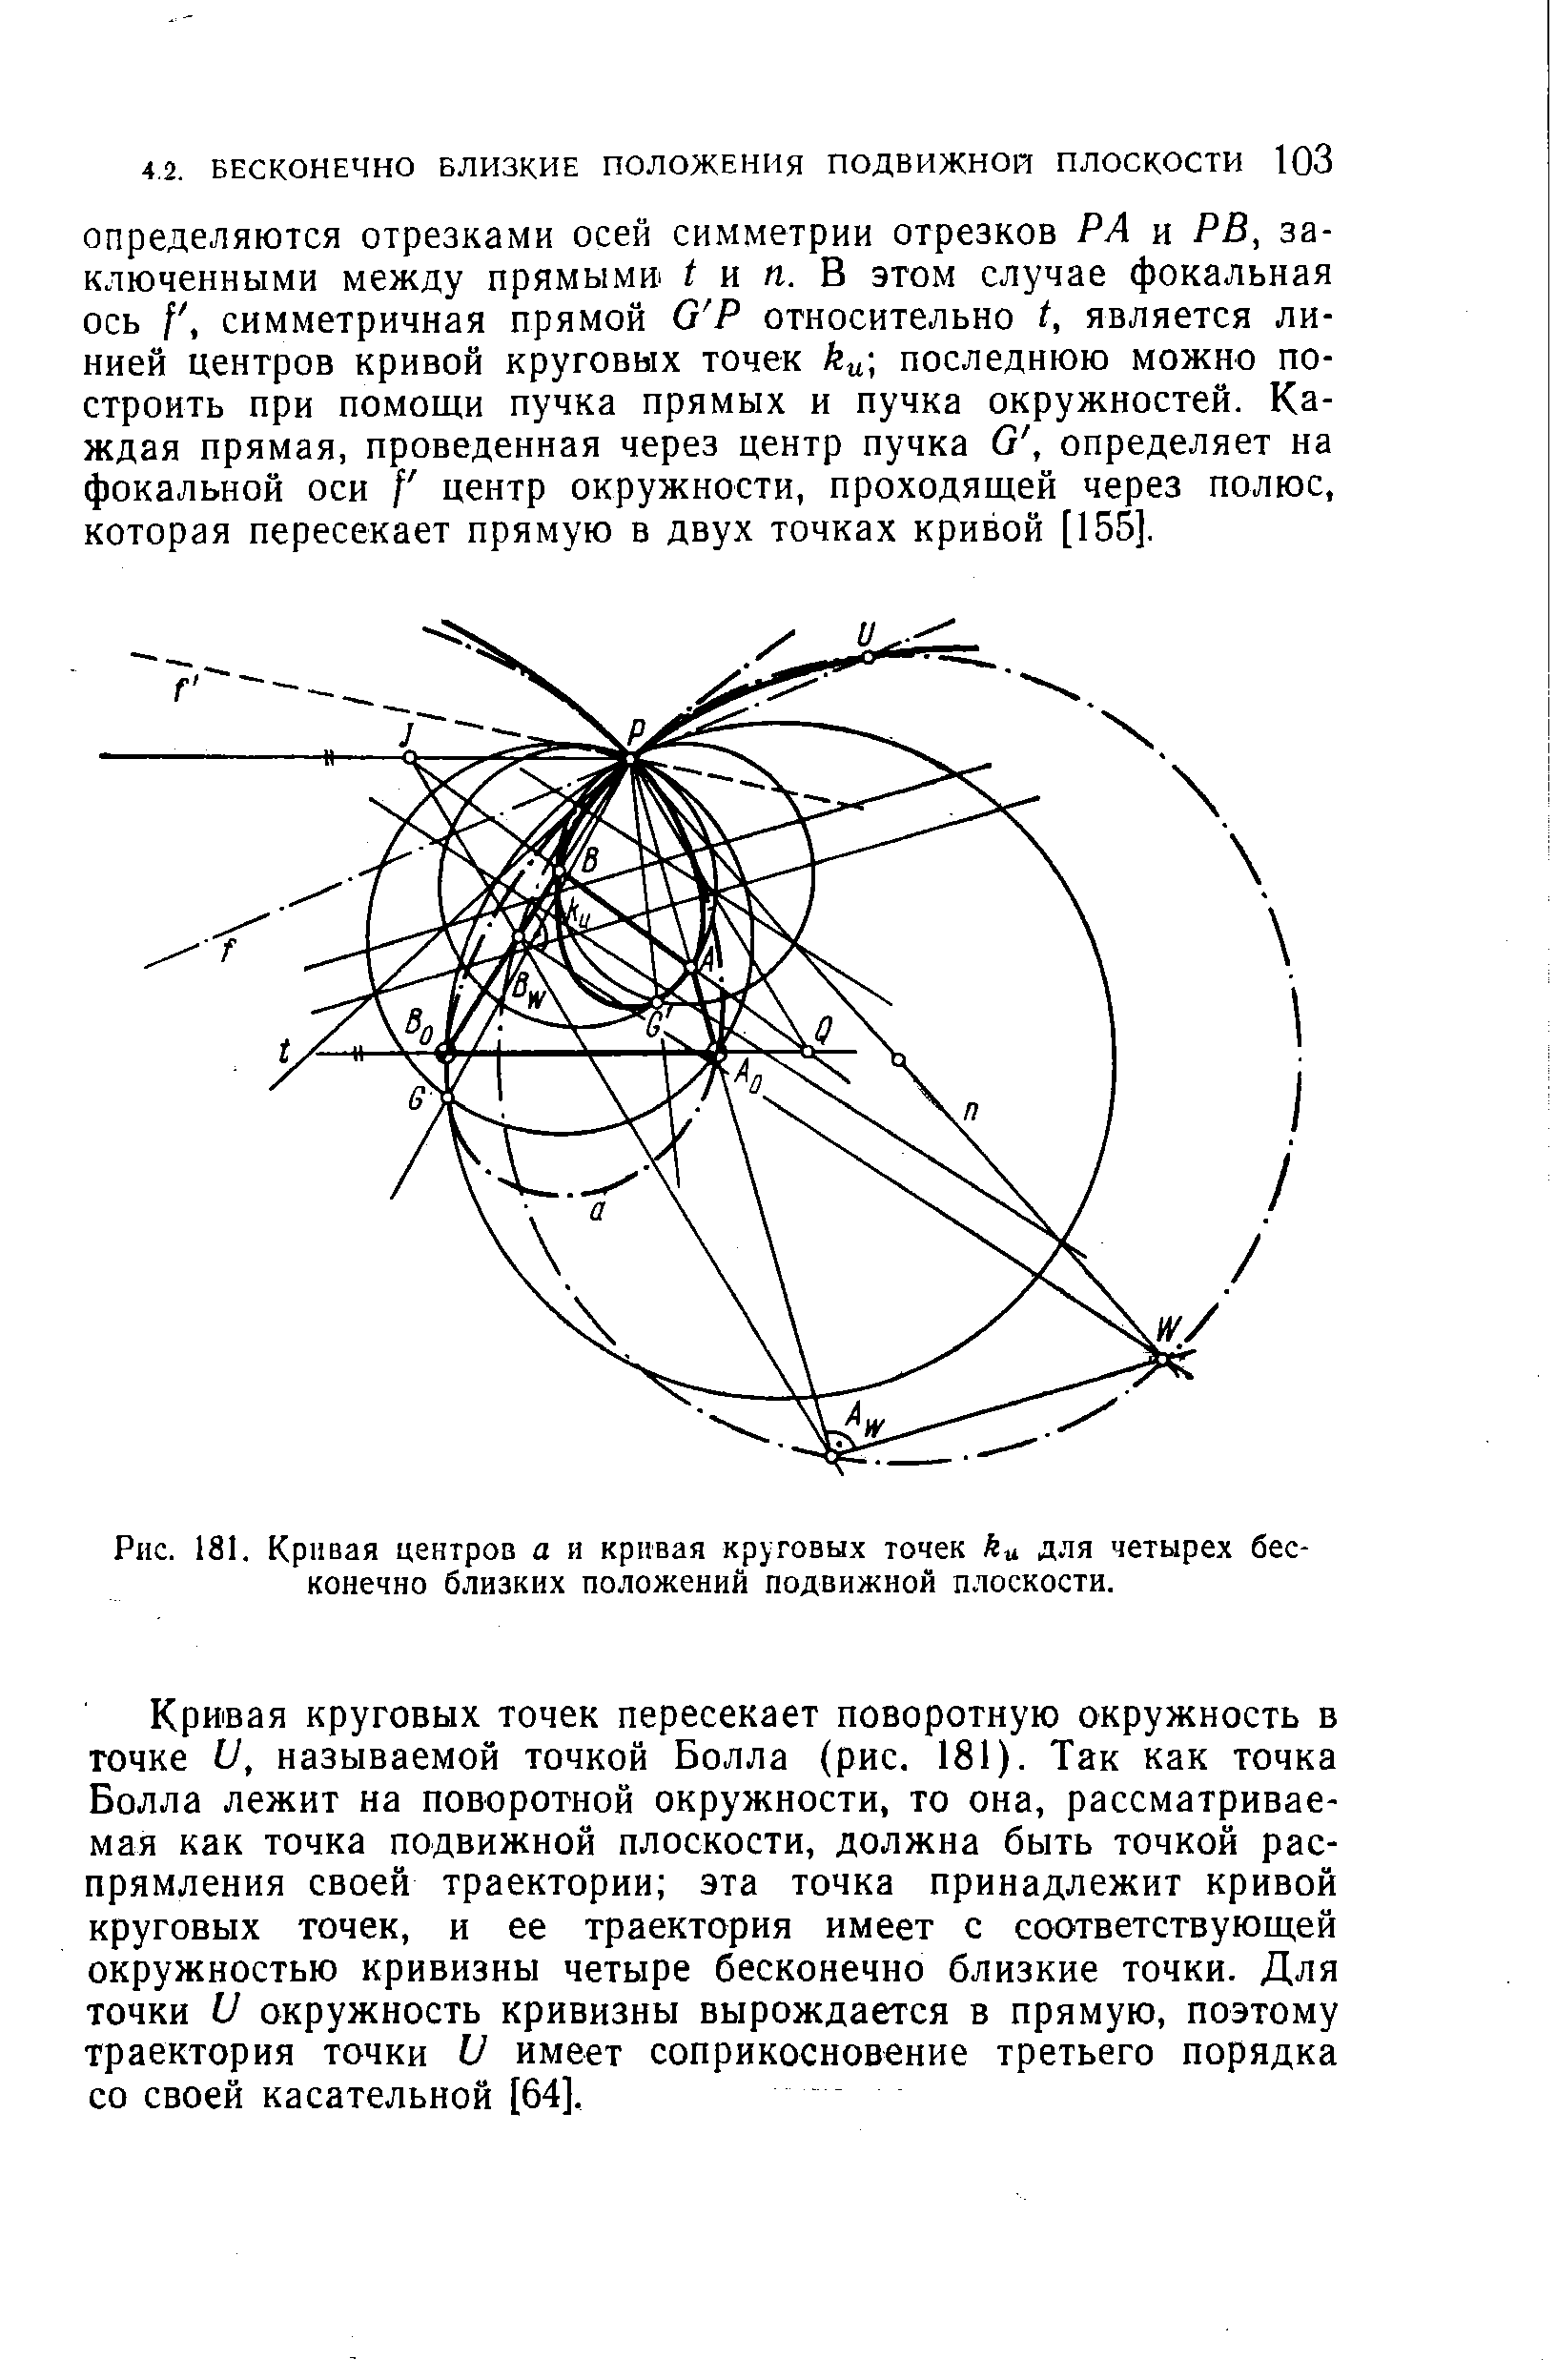 Рис. 181. <a href="/info/61605">Кривая центров</a> а и кривая круговых точек ku для четырех бесконечно близких положений подвижной плоскости.
